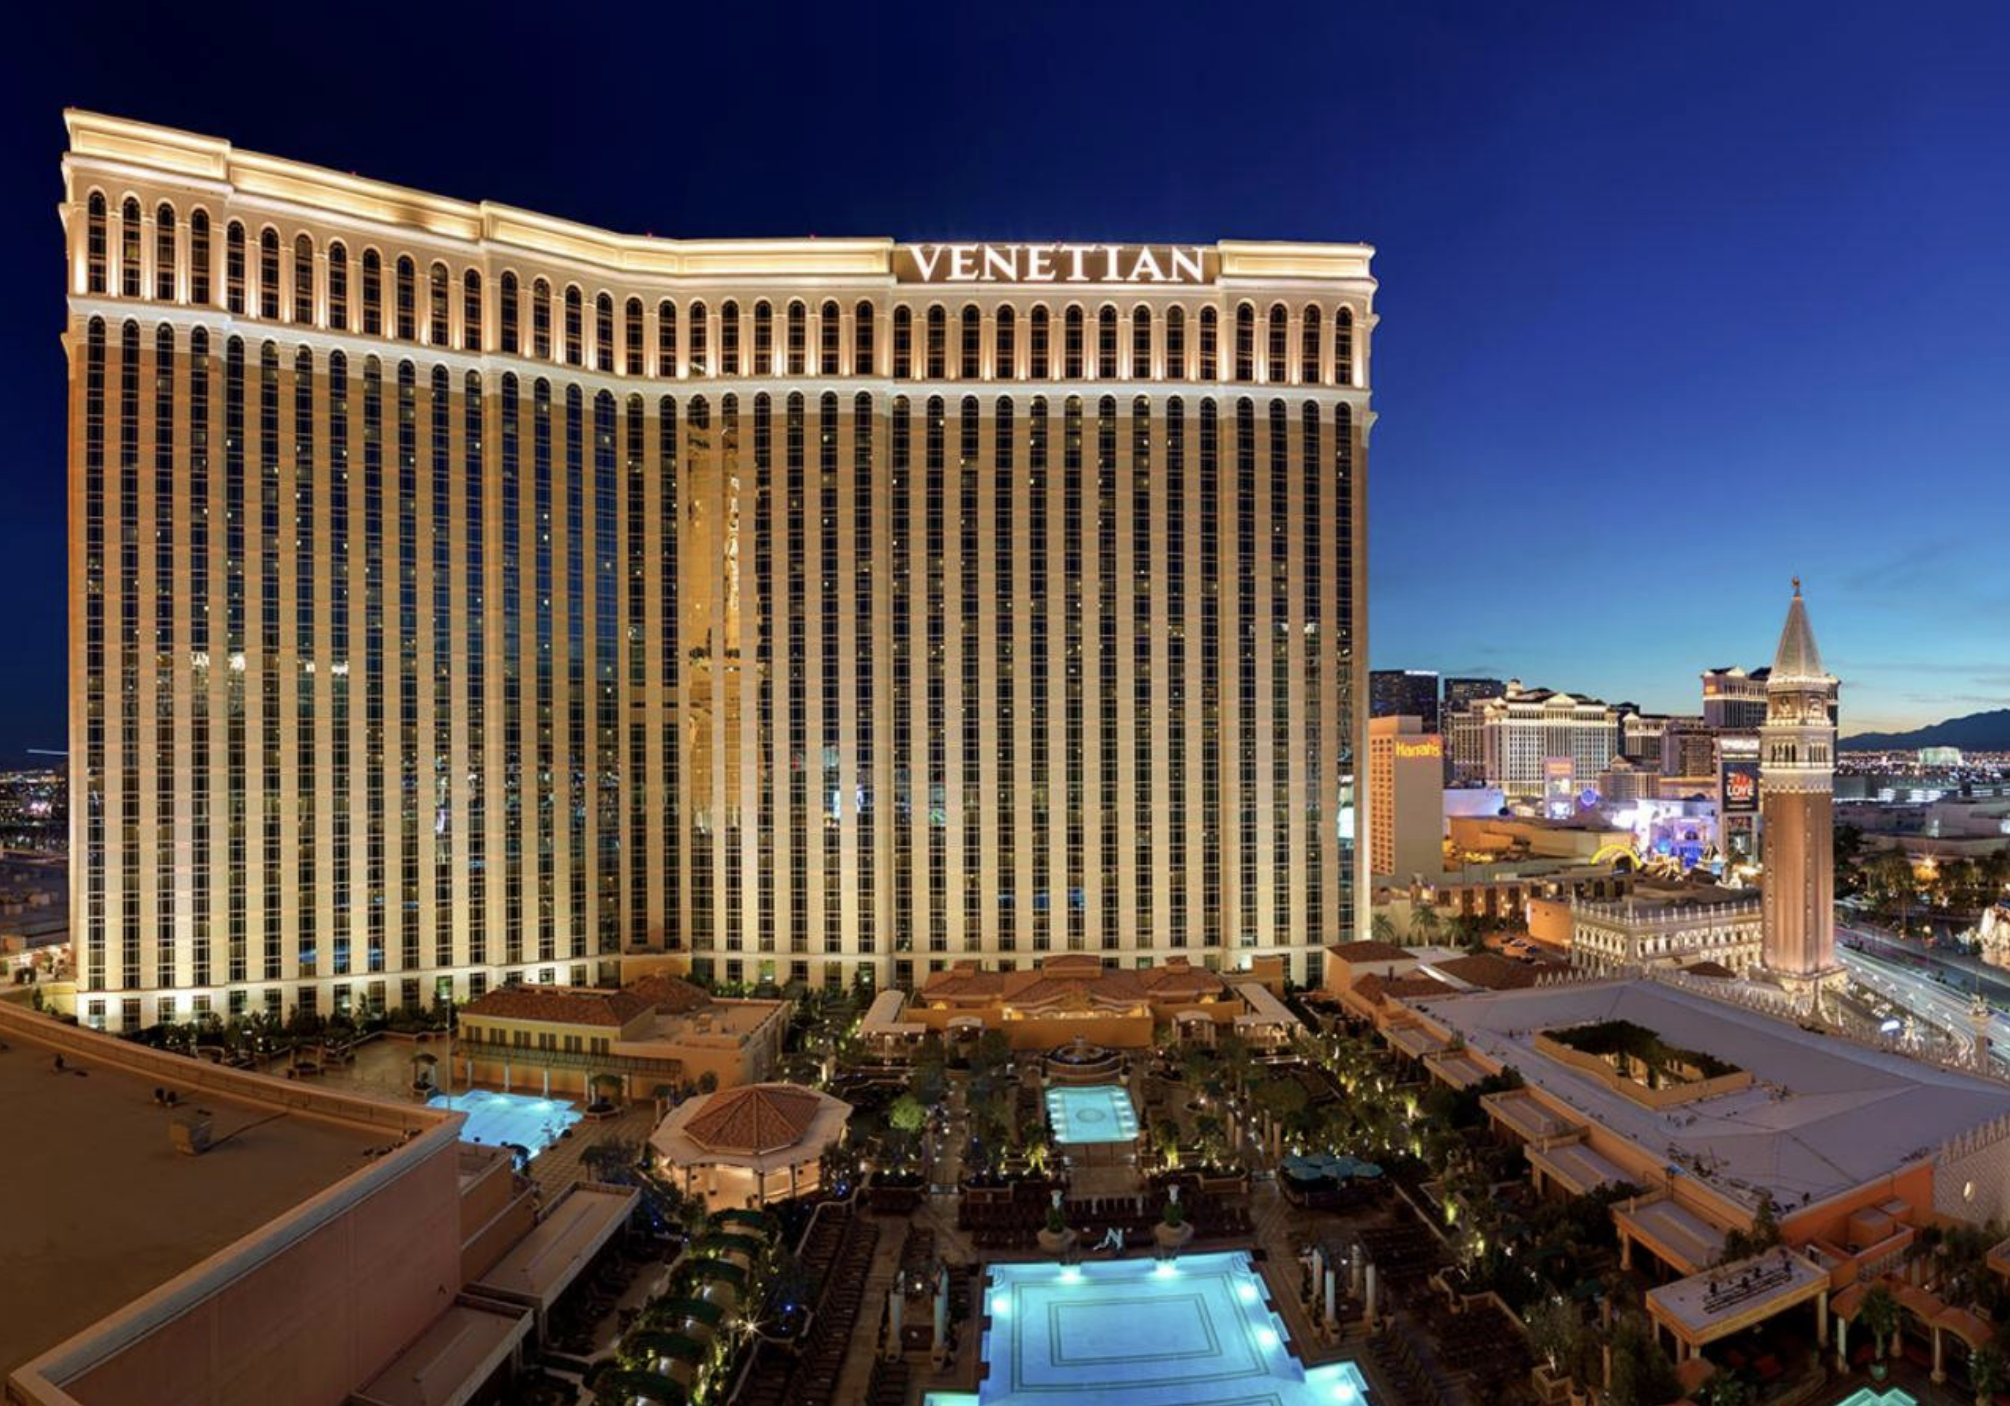 Stay or visit The Venetian Las Vegas